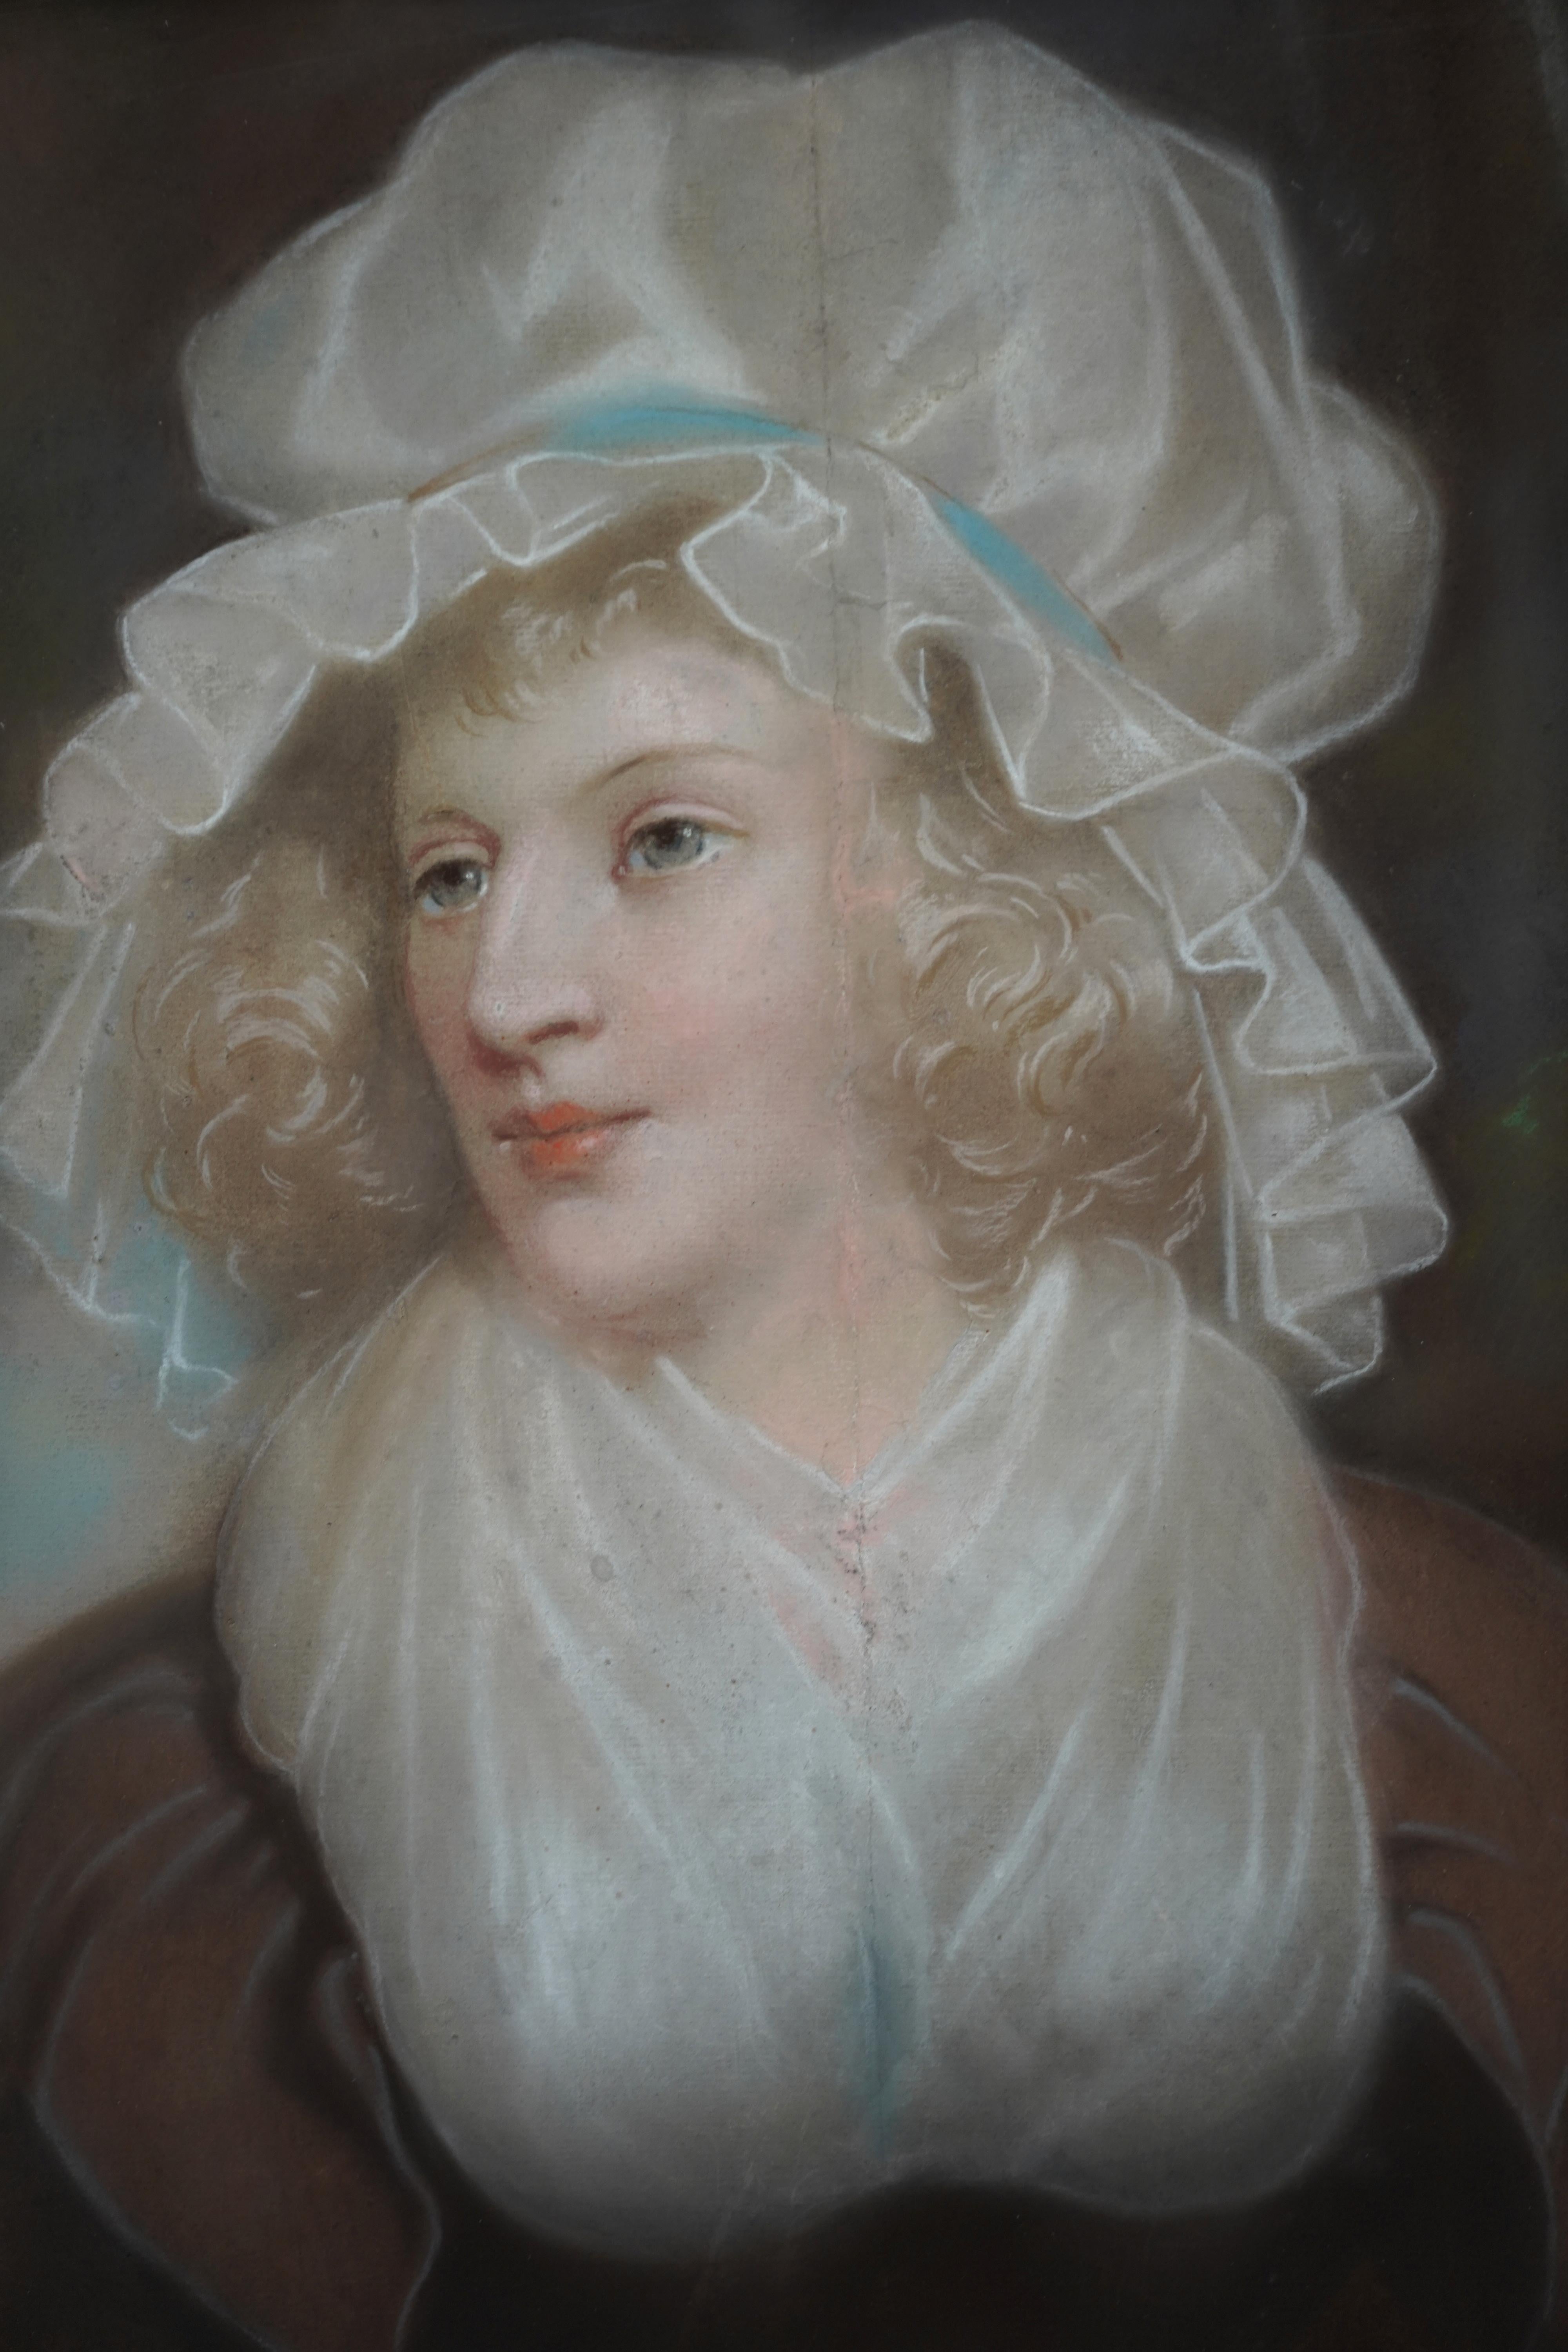 Dieses charmante britische Altmeister-Regency-Pastellporträt wird John Russell RA zugeschrieben. Die um 1790 gemalte Komposition zeigt eine blonde Frau mit hübscher mob cap und blauem Band. Ein wirklich schönes Bild. 
Provenienz. Anwesen in Oxford.